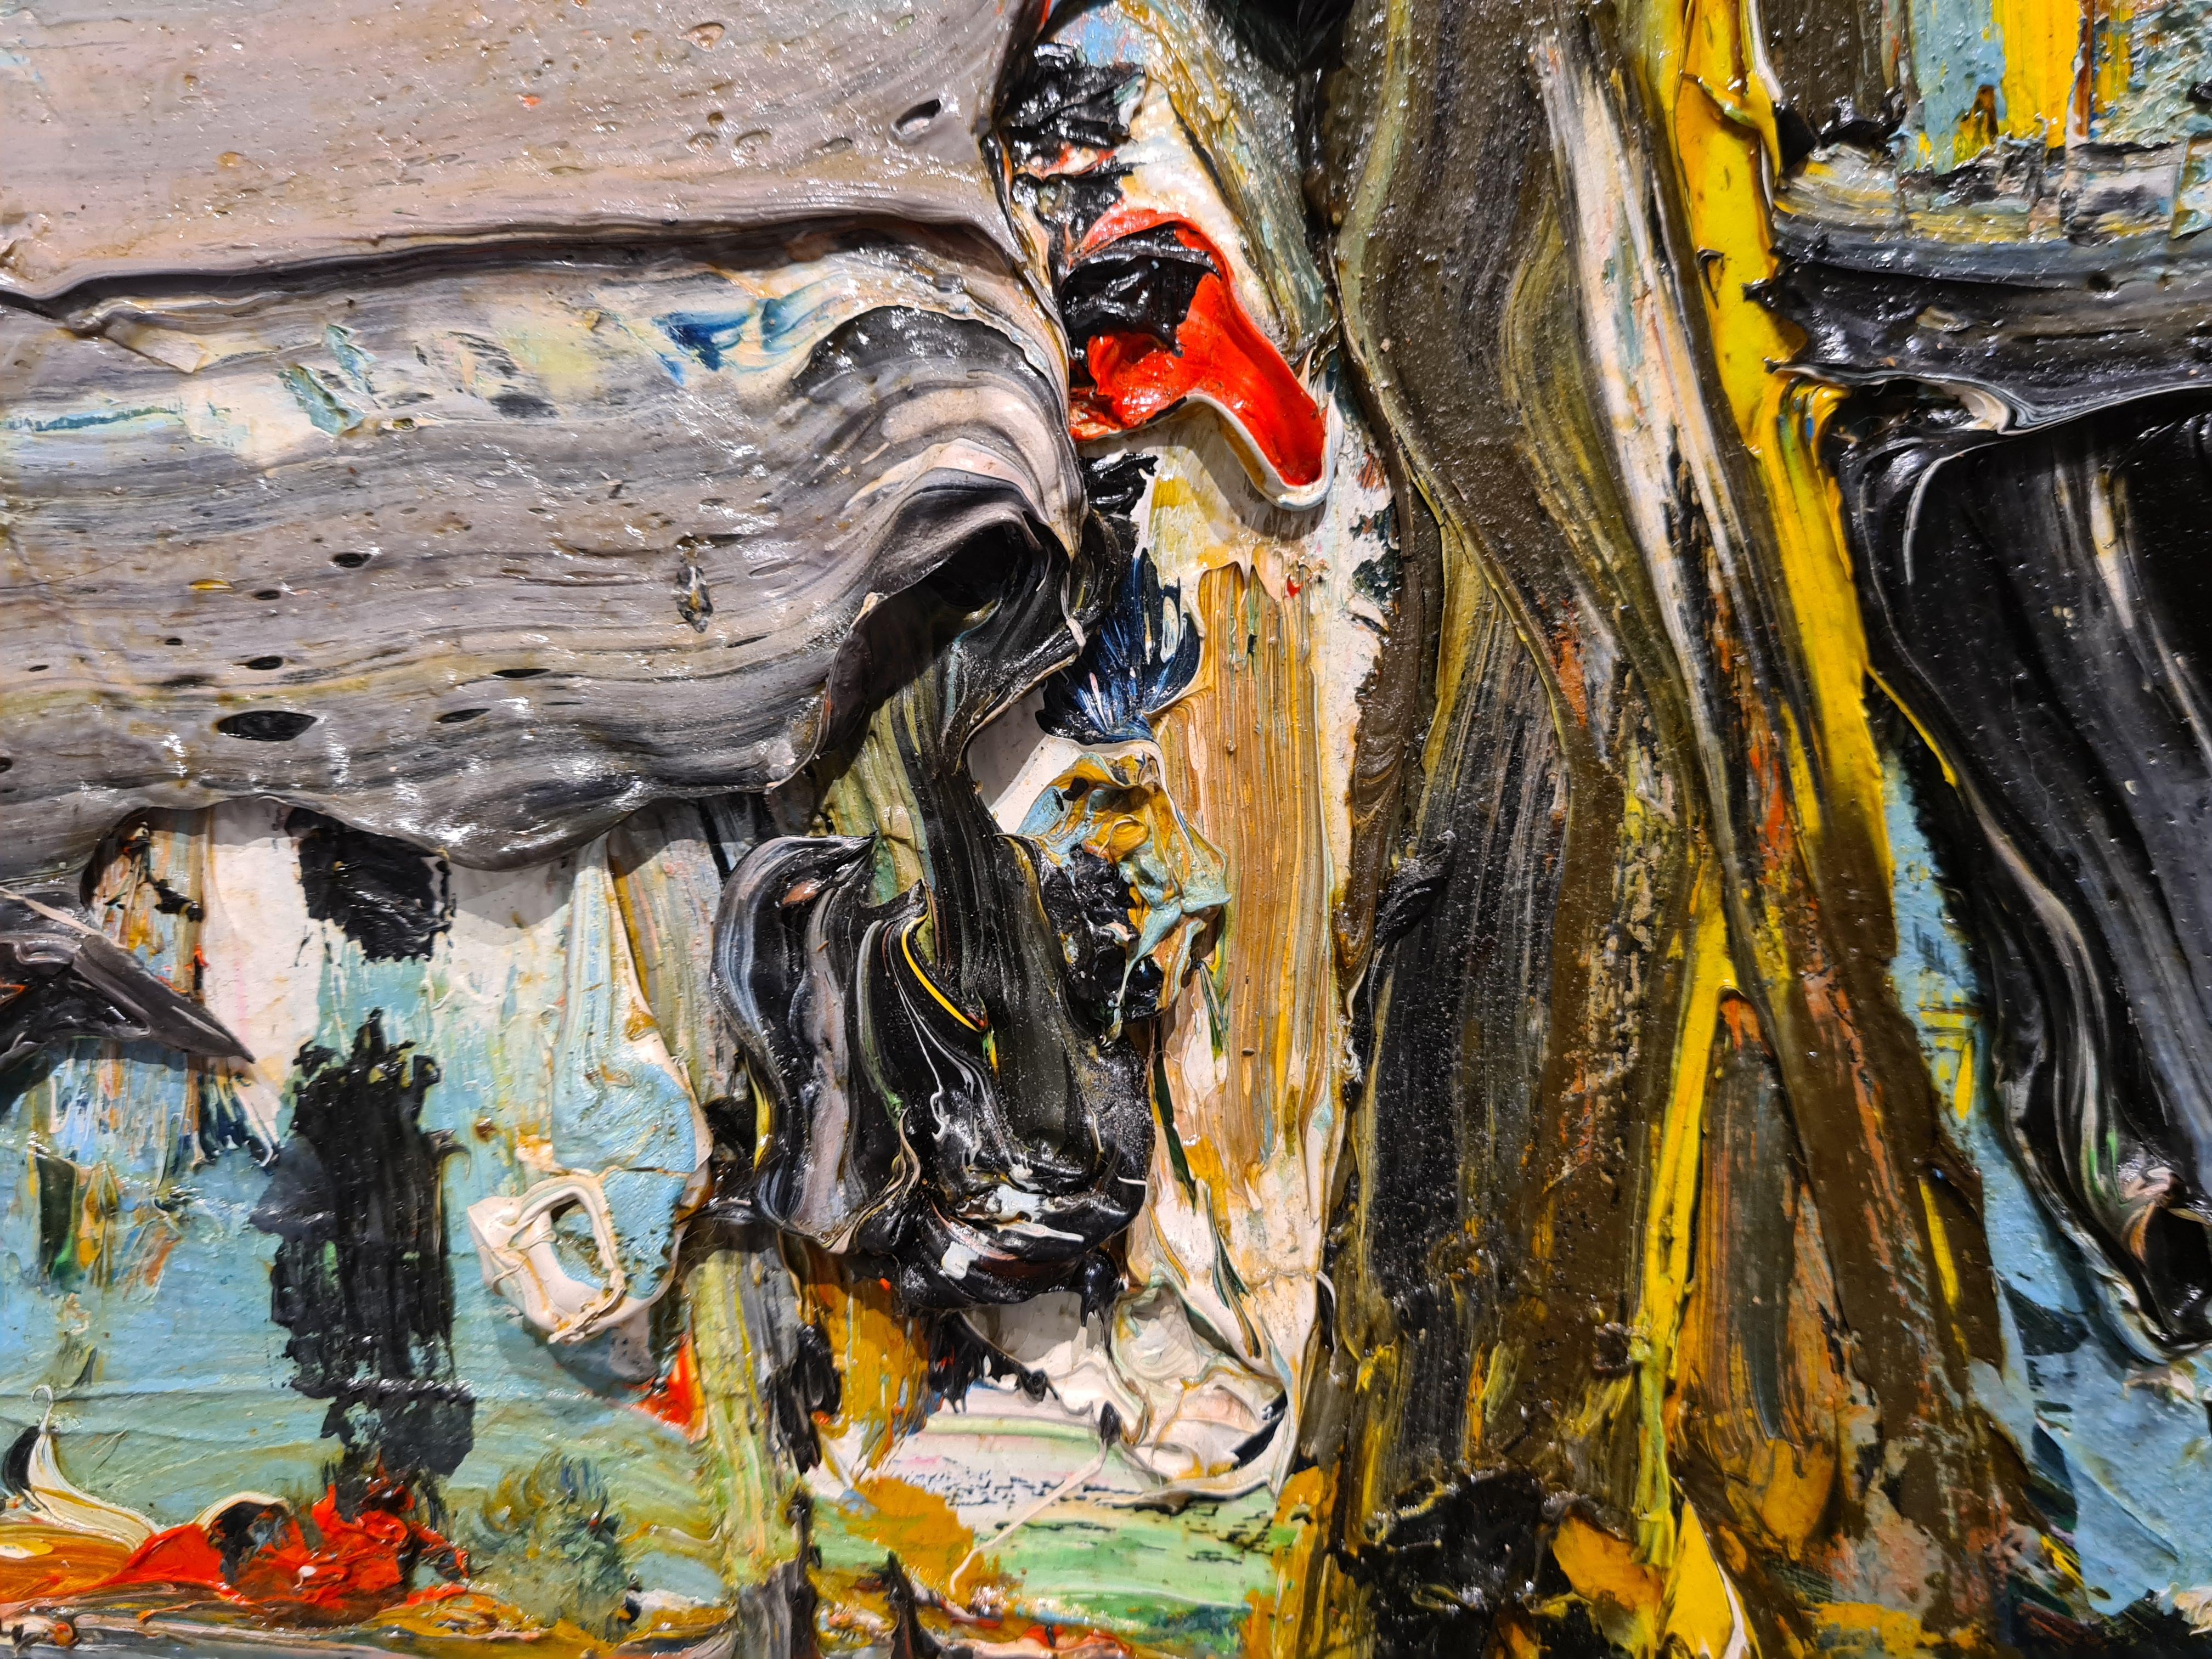 Farbenfrohe pastos gemalte Landschaft an der Côte d'Azur von Bernard Damiano. Das Gemälde ist auf der Vorderseite signiert und auf der Rückseite der Leinwand signiert, betitelt, datiert und mit einer Widmung versehen.

Bernard Damiano ist ein